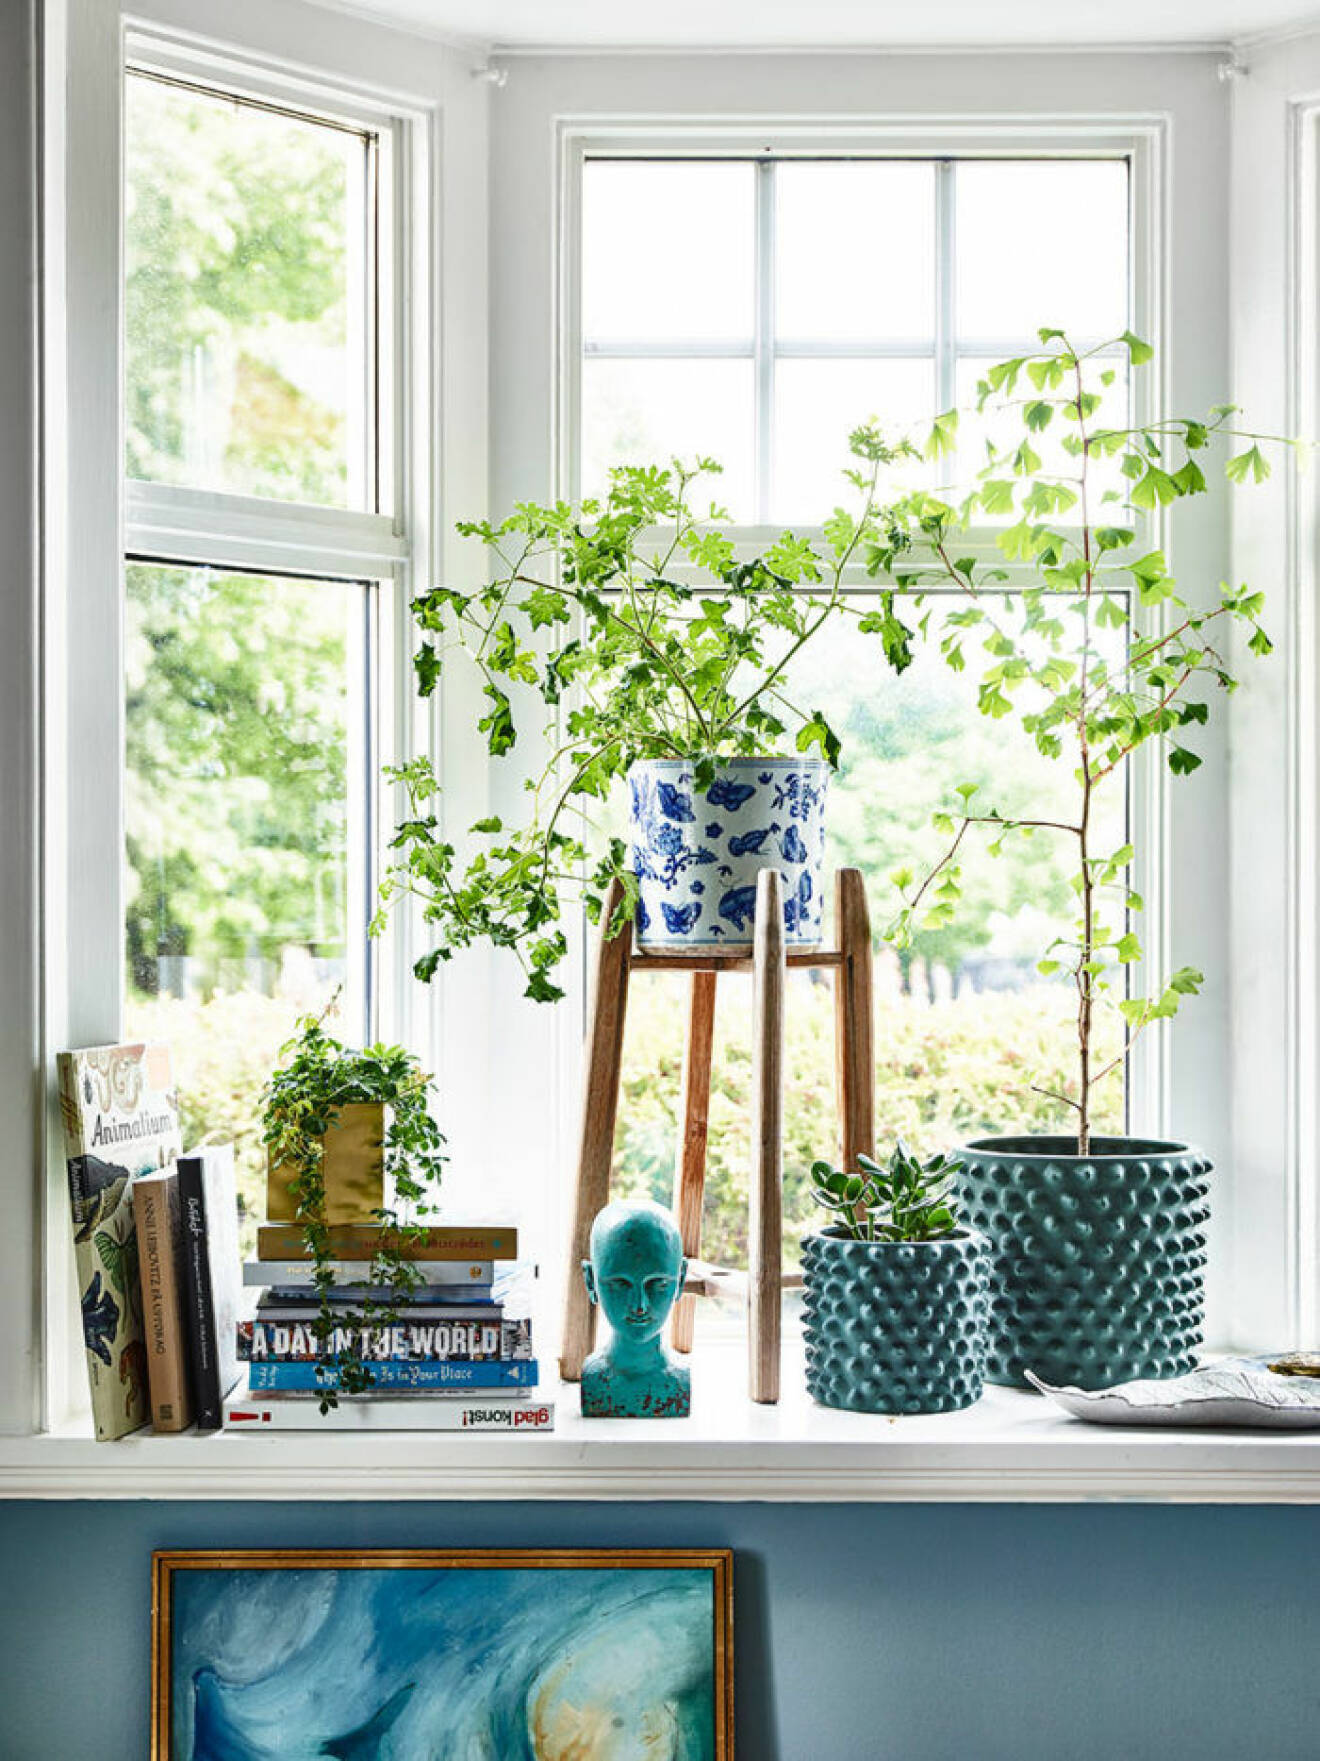 Vackert stilleben i fönstret med växter, vaser och böcker